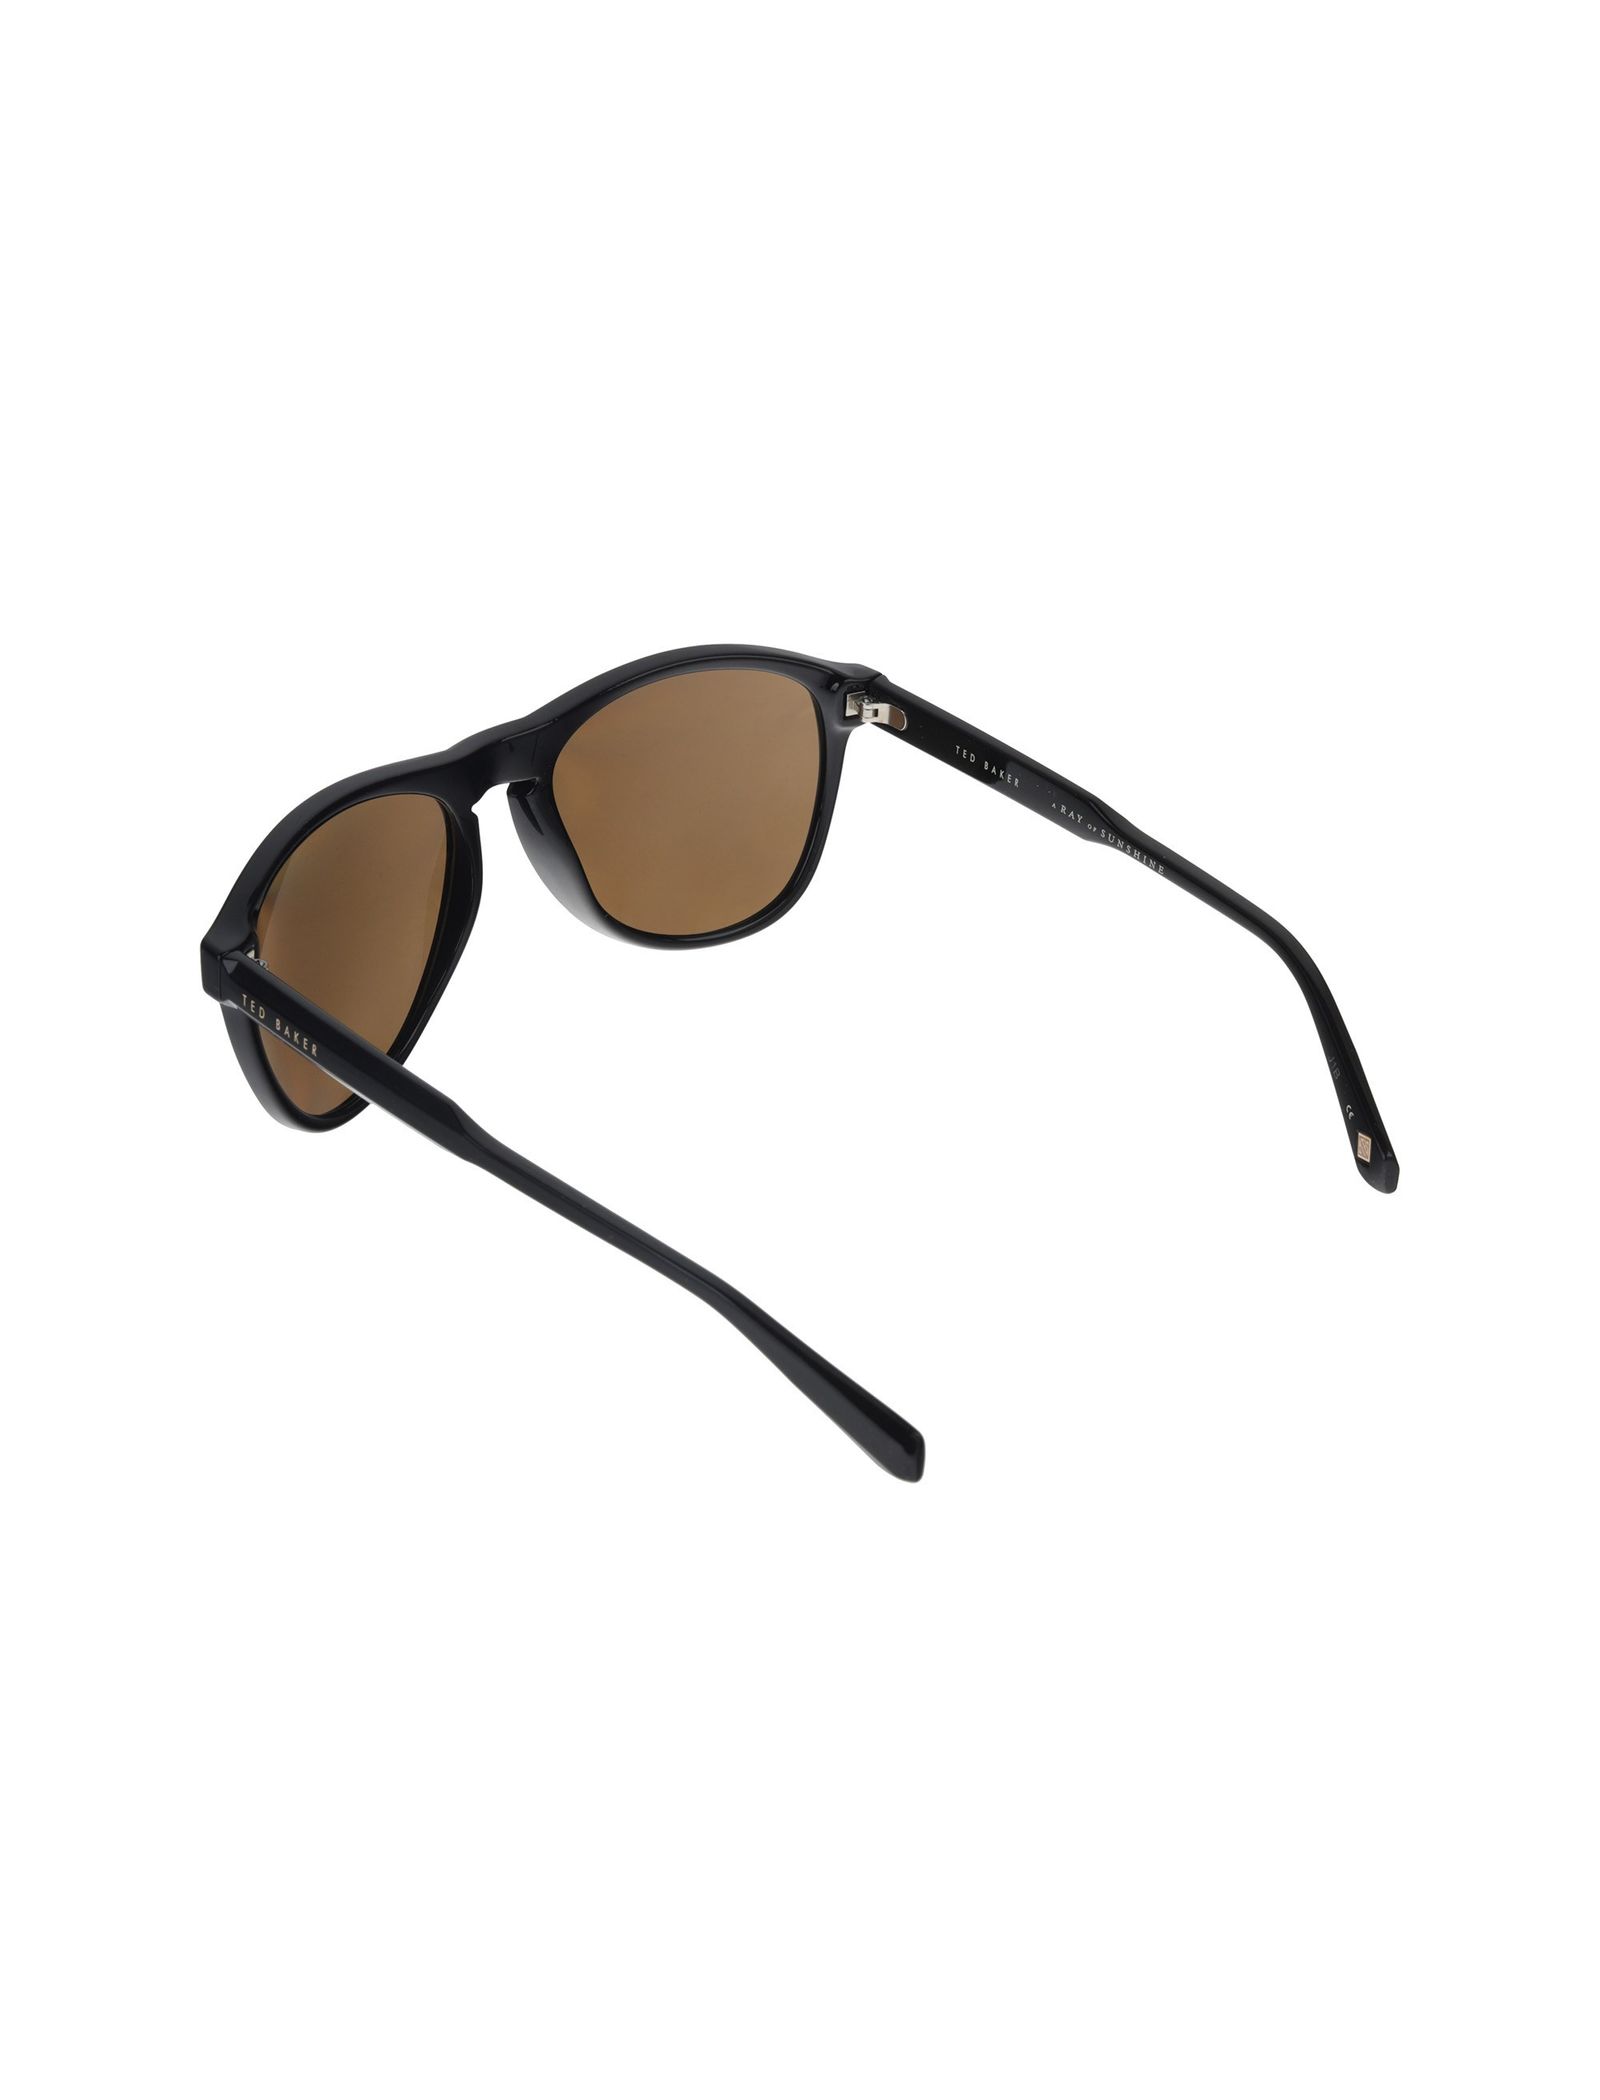 عینک آفتابی خلبانی مردانه - تد بیکر - مشکي - 5